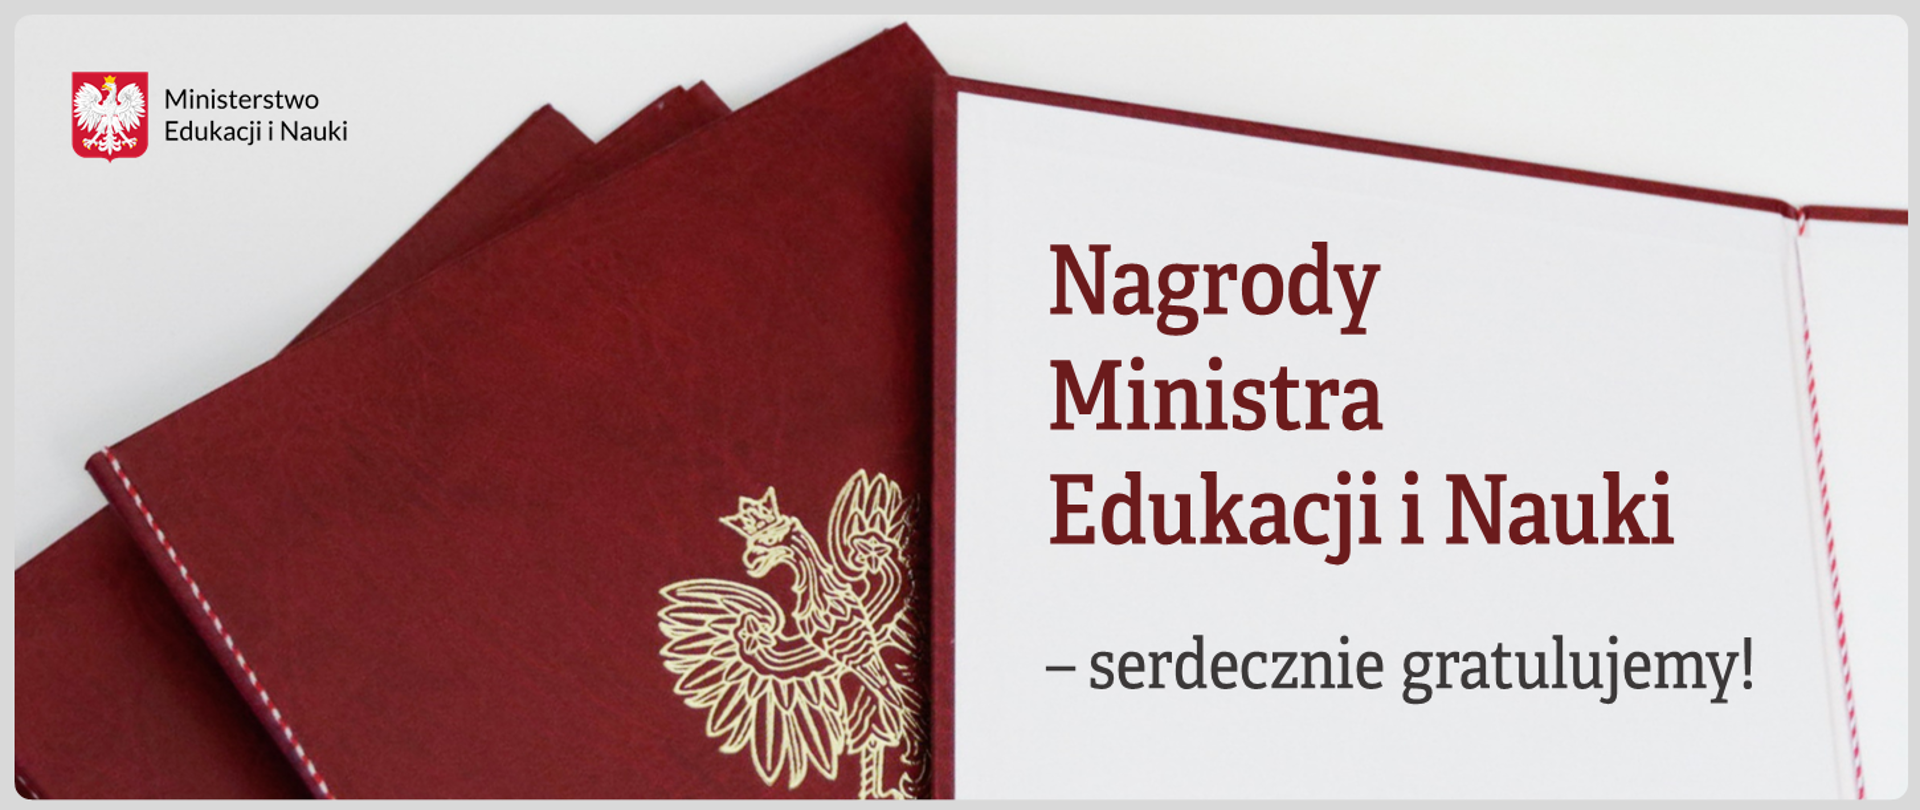 Teczki ministerialne i napis: "Nagrody Ministra Edukacji i Nauki - serdecznie gratulujemy!"